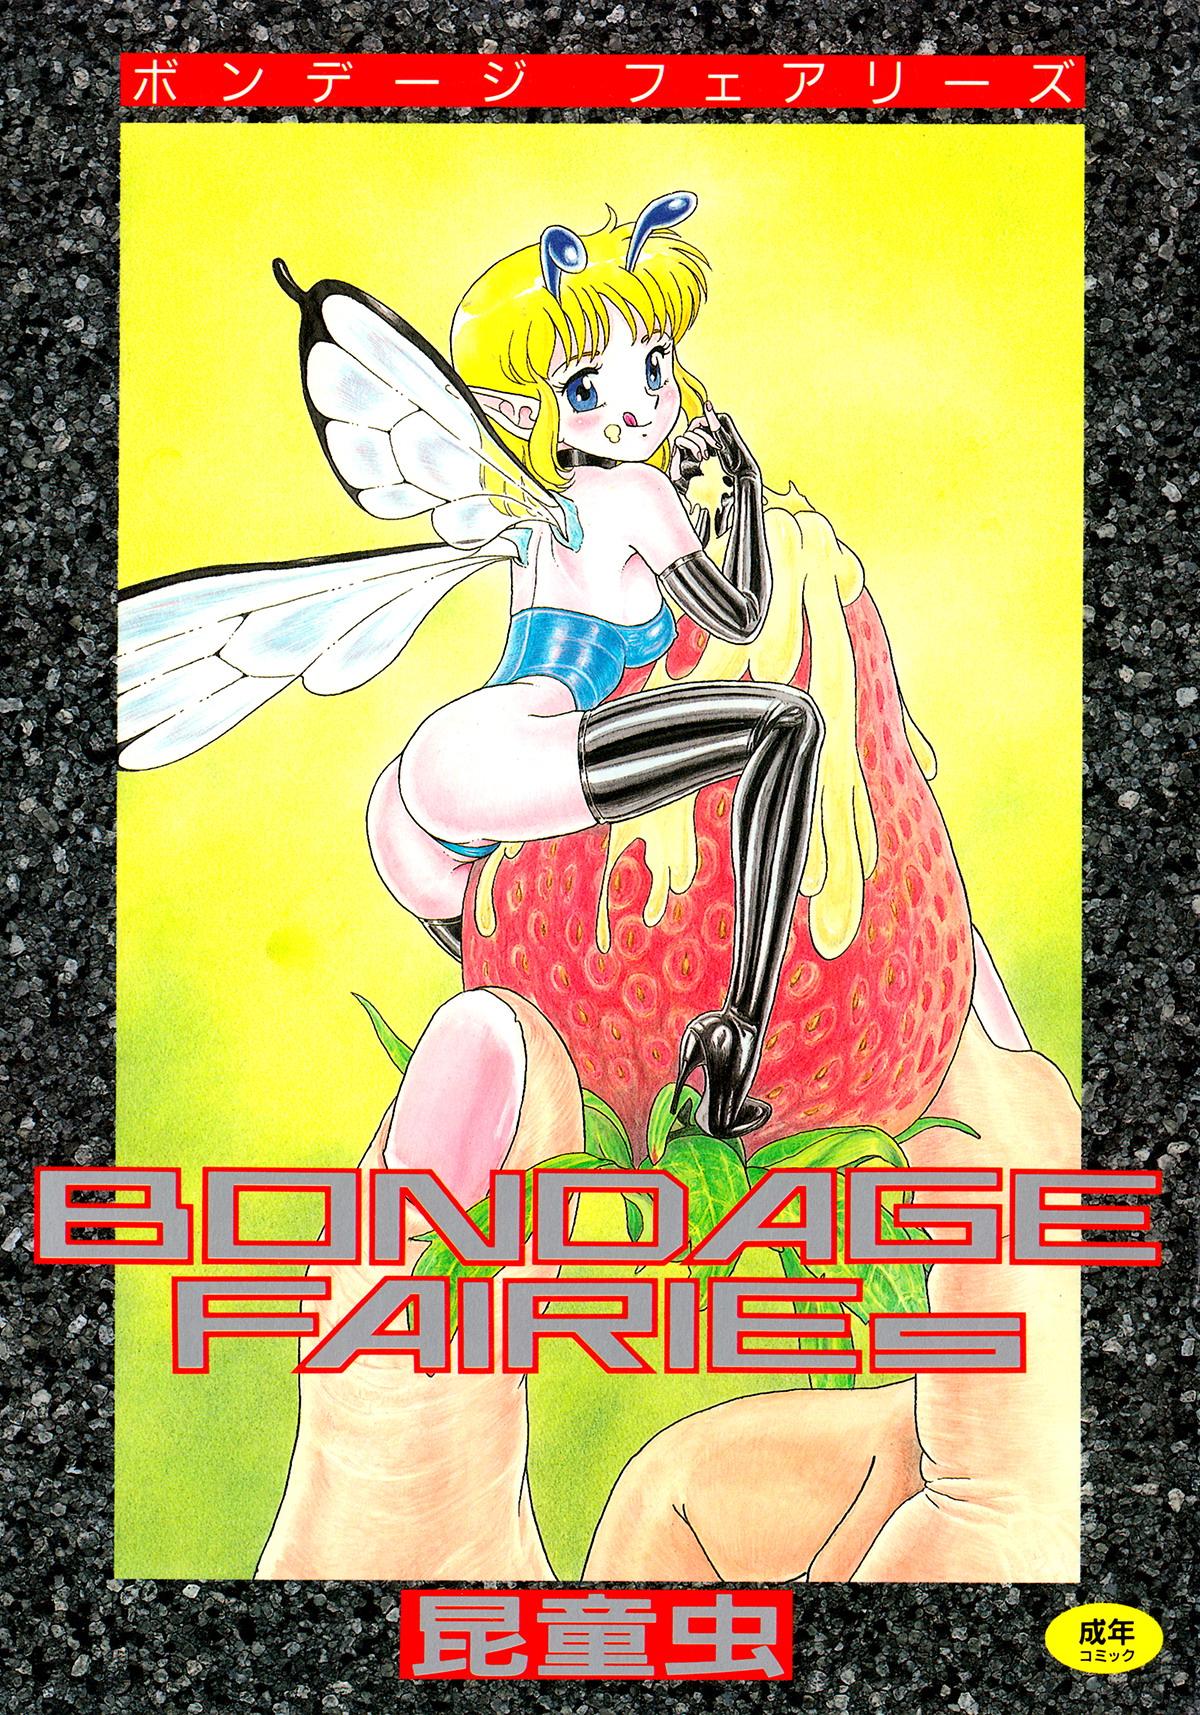 Bondage Fairies 0